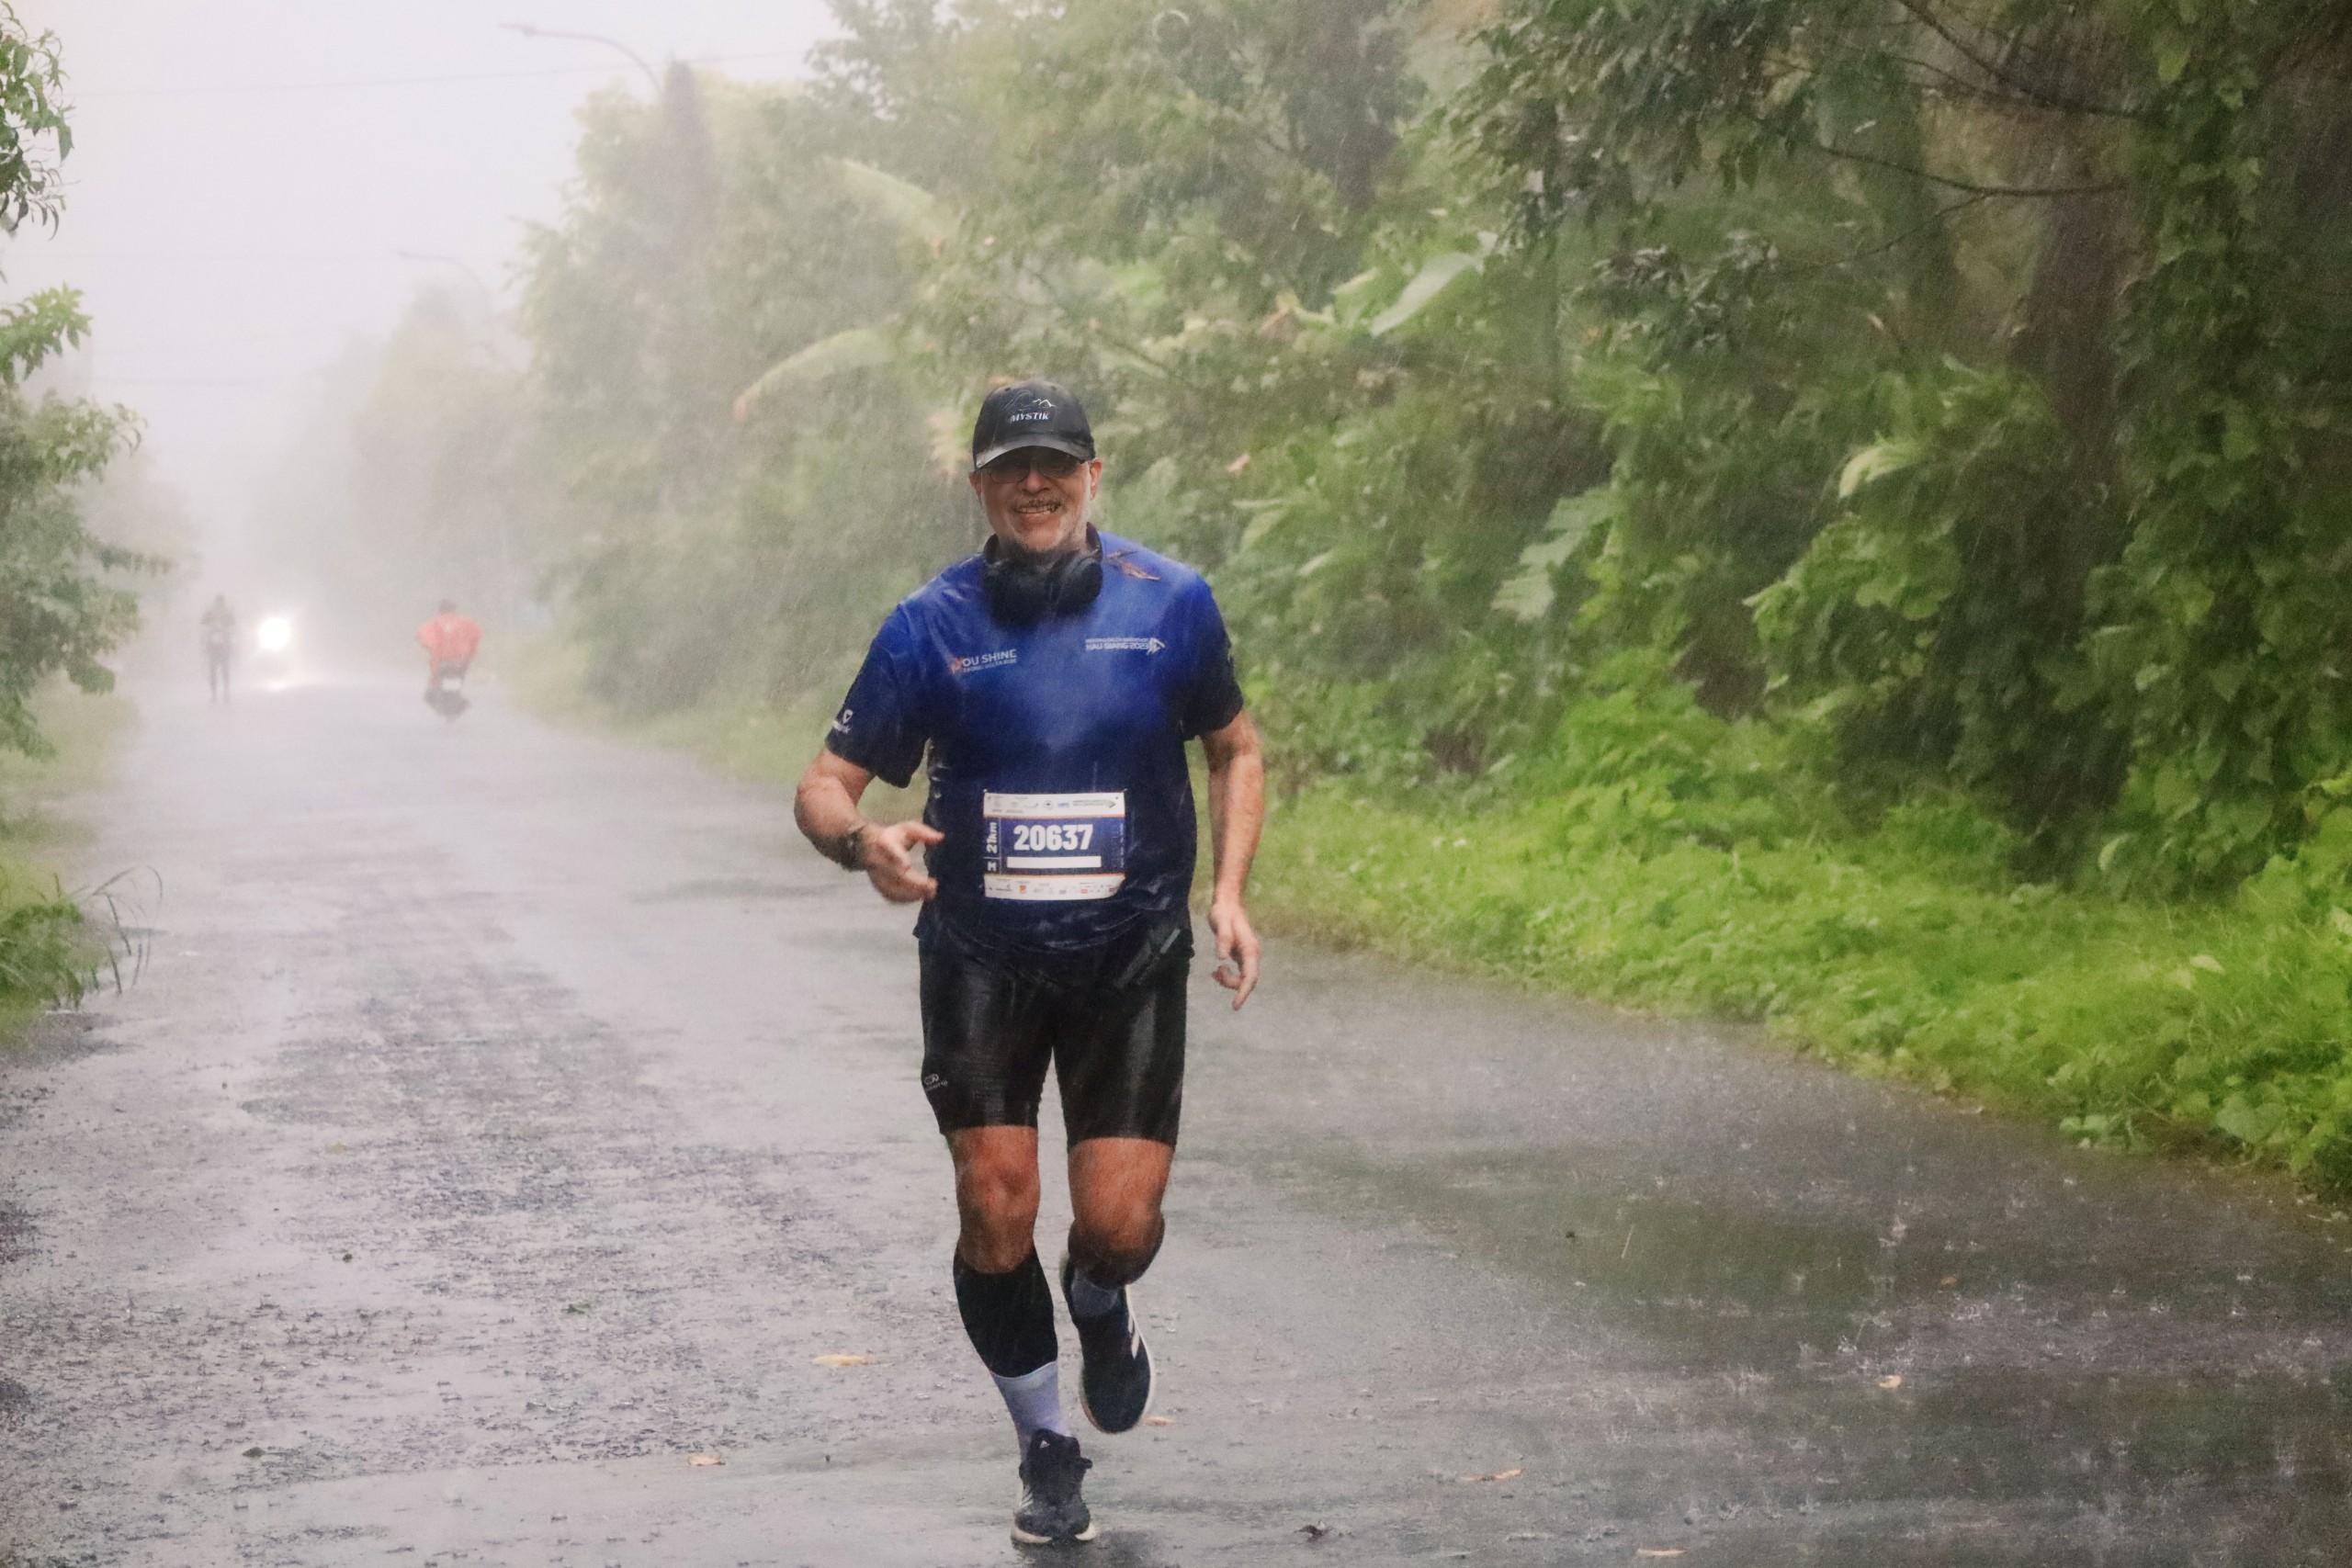 Một vận động viên nước ngoài tham gia đường chạy 21km, mặc dù thời tiết mưa lớn nhưng không làm khó được những bước chân đam mê marathon.